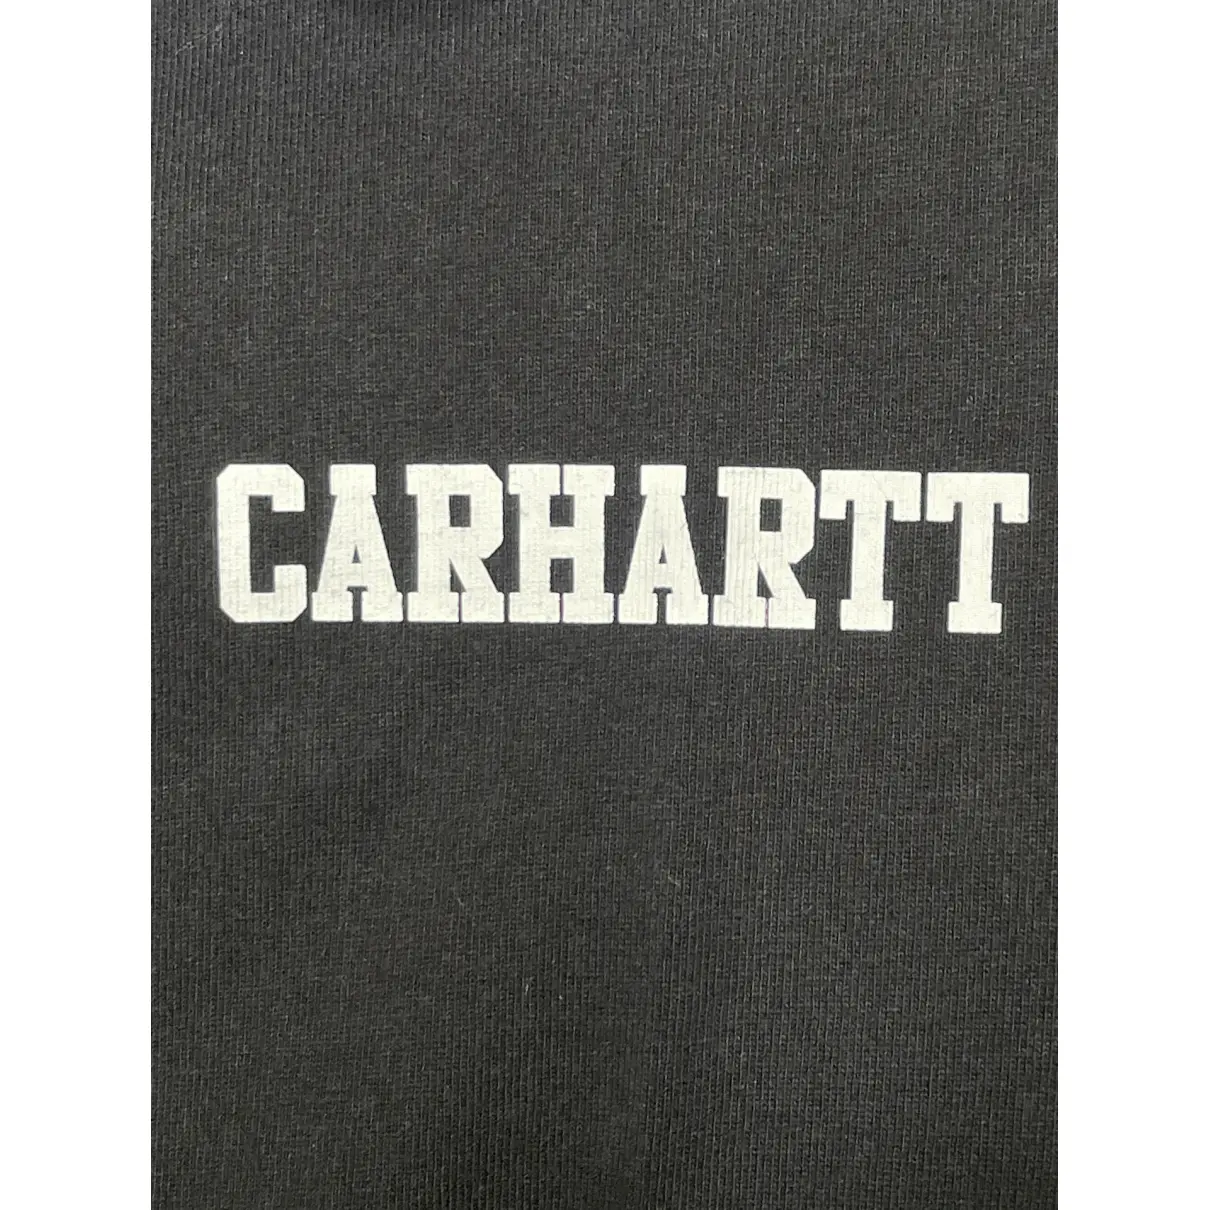 T-shirt Carhartt